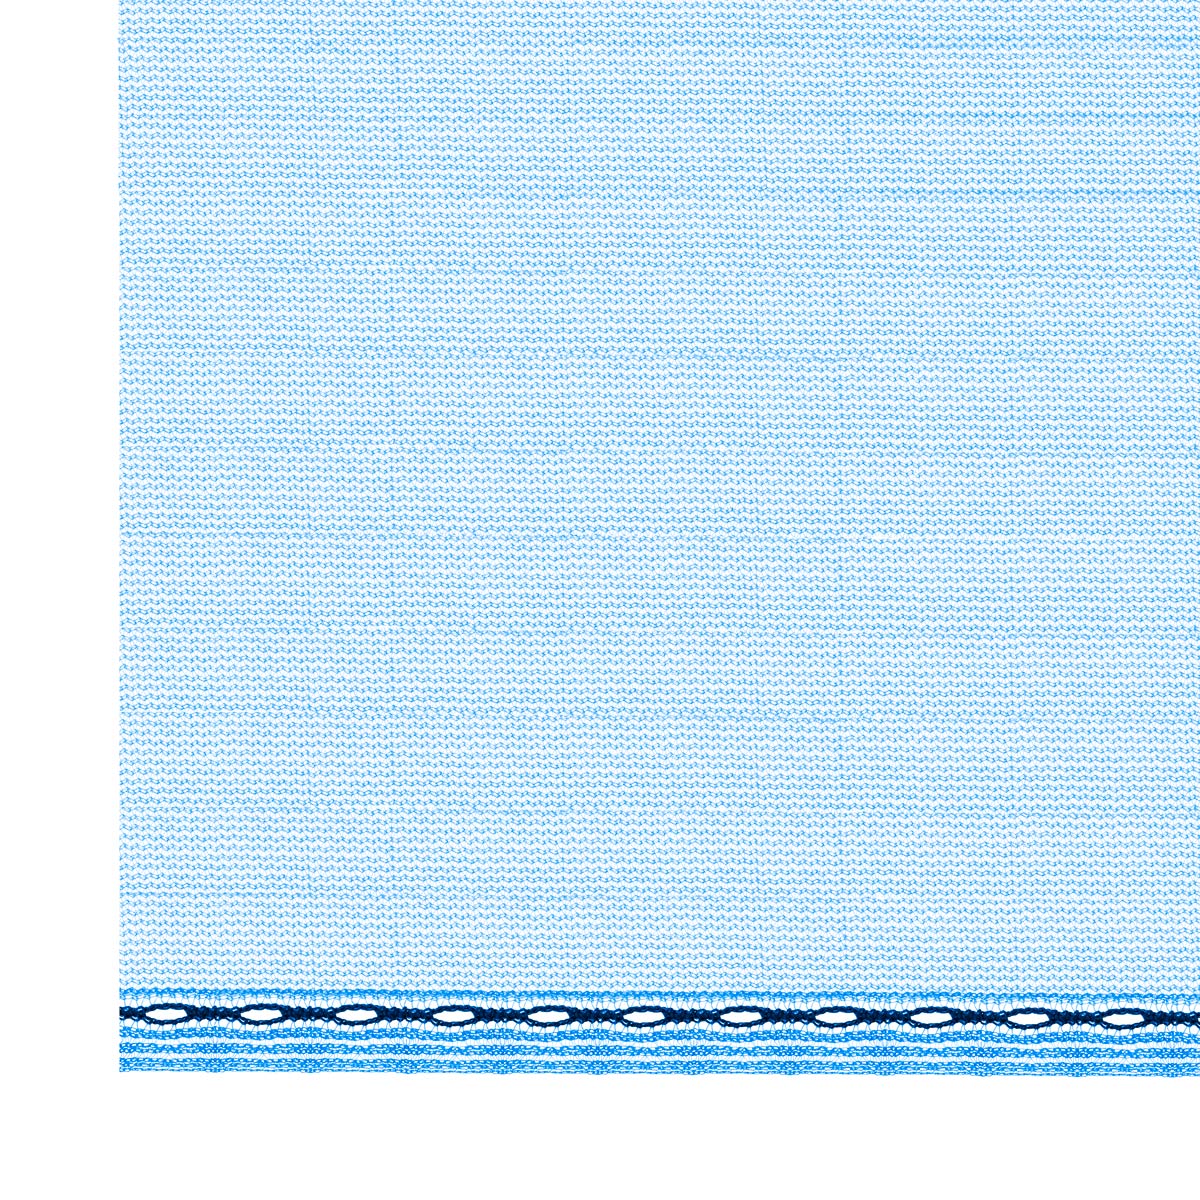 Huck Schutznetz 50 2,57 x 20 m blau